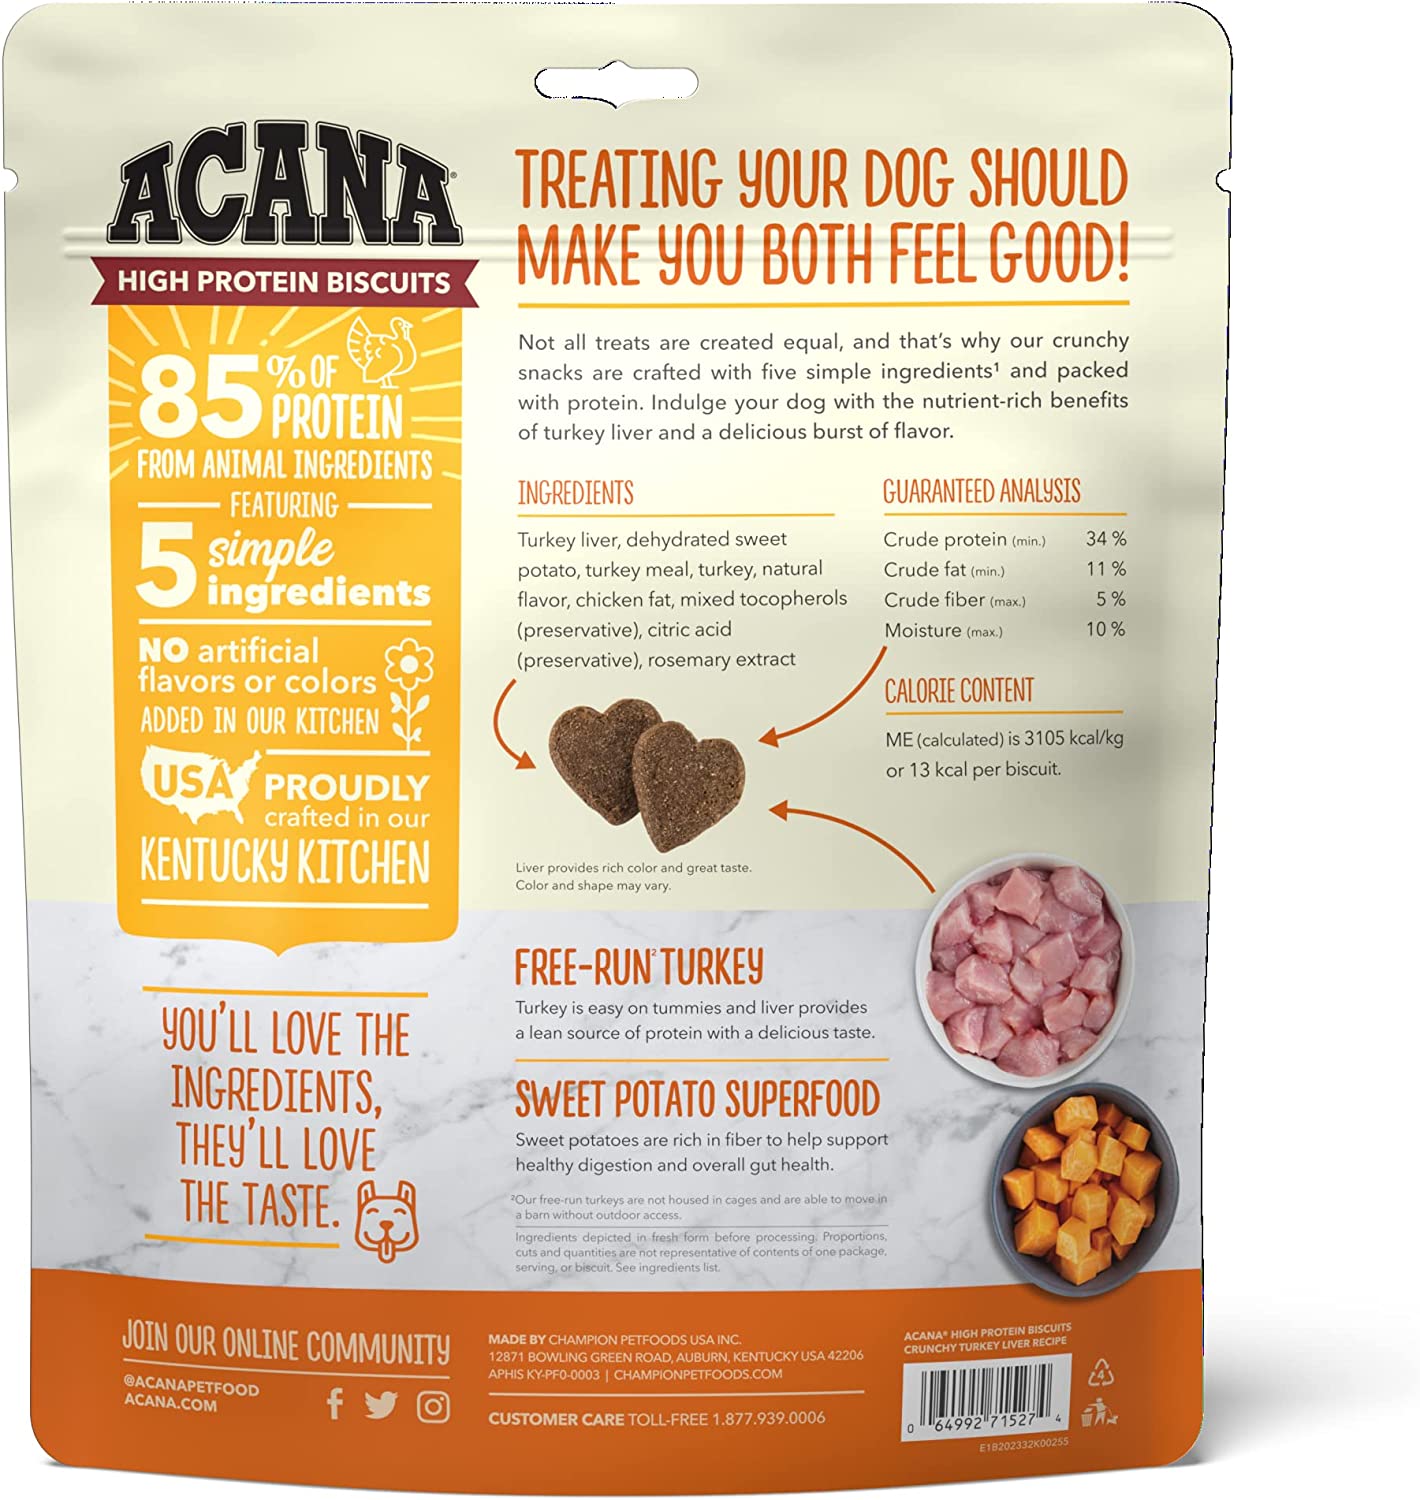 ACANA High-Protein Biscuits, Crunchy Turkey Liver Recipe - 9oz